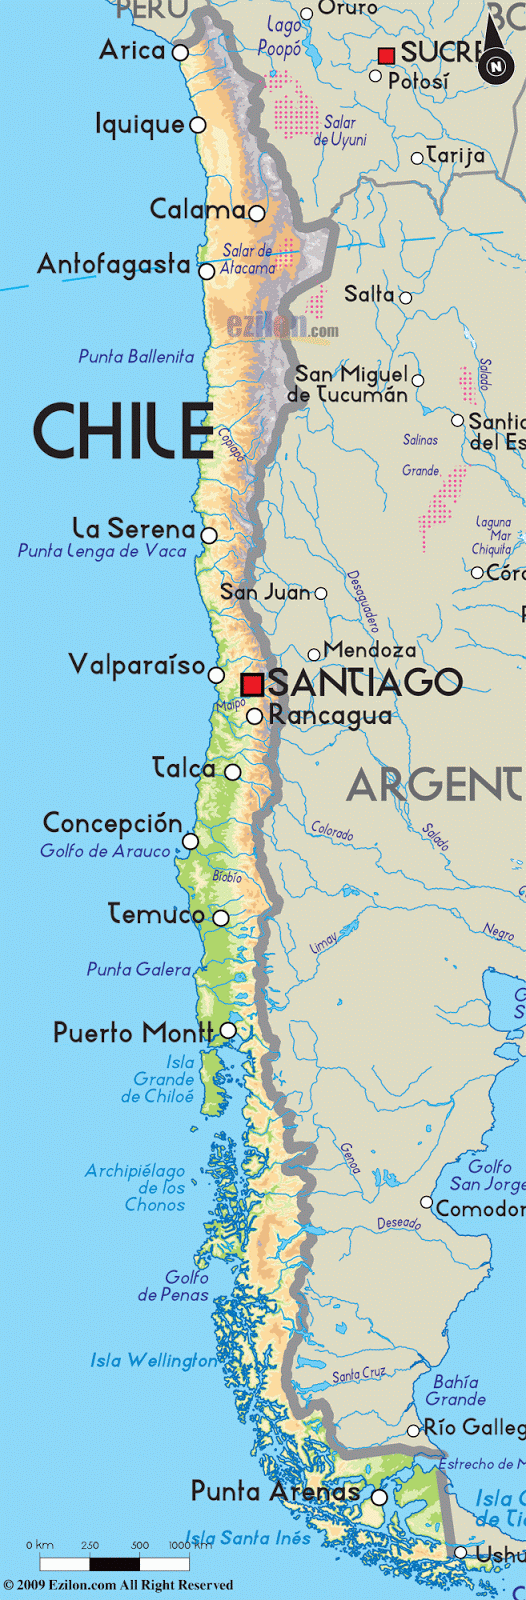 Los Amigos Viajar: Mapa de Chile